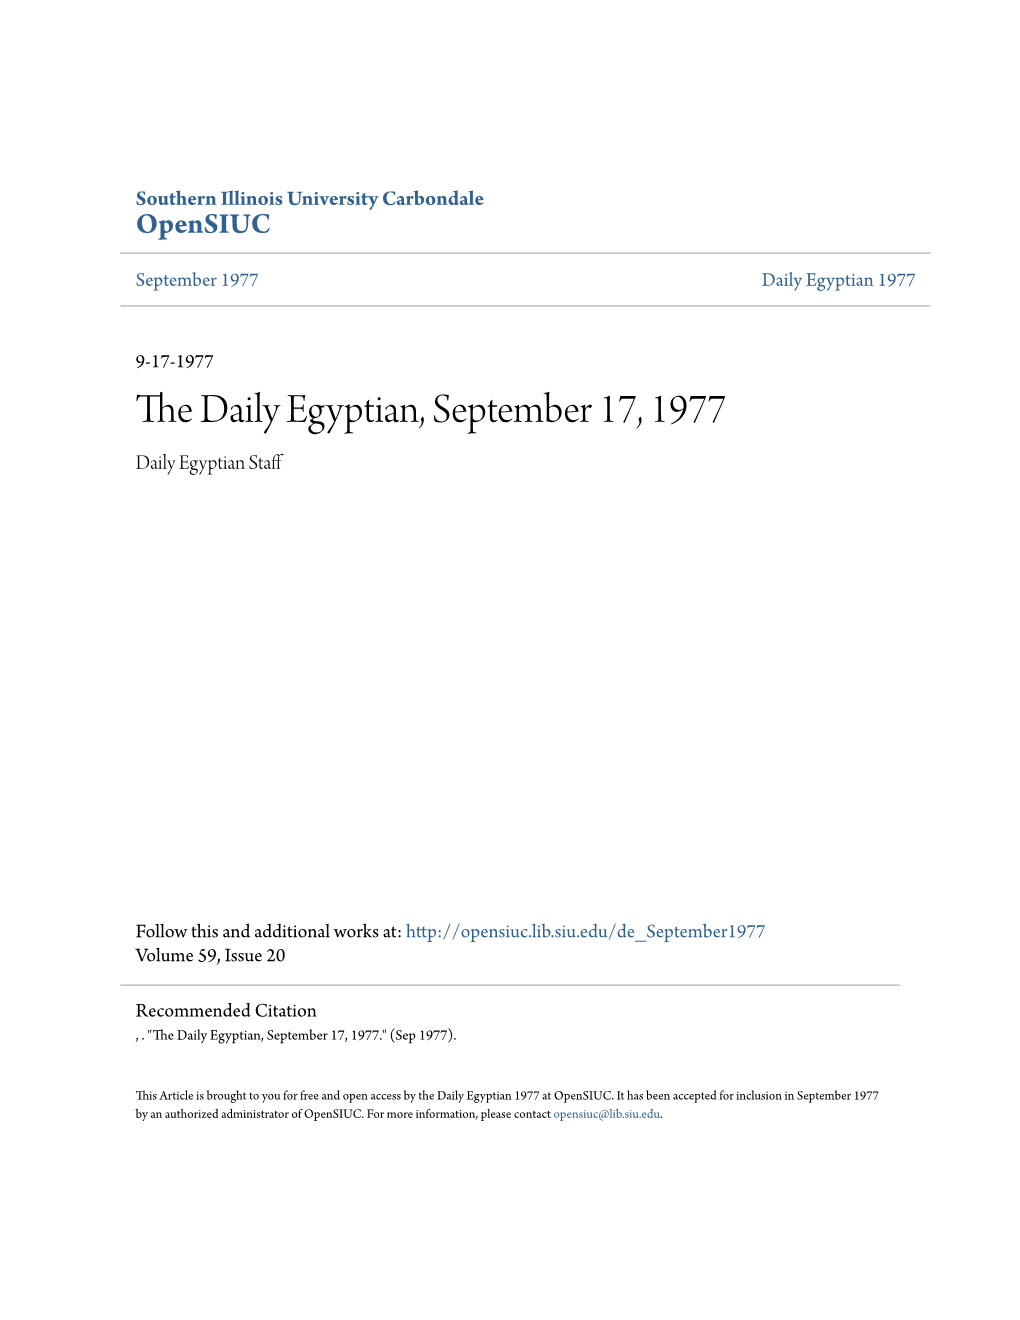 The Daily Egyptian, September 17, 1977